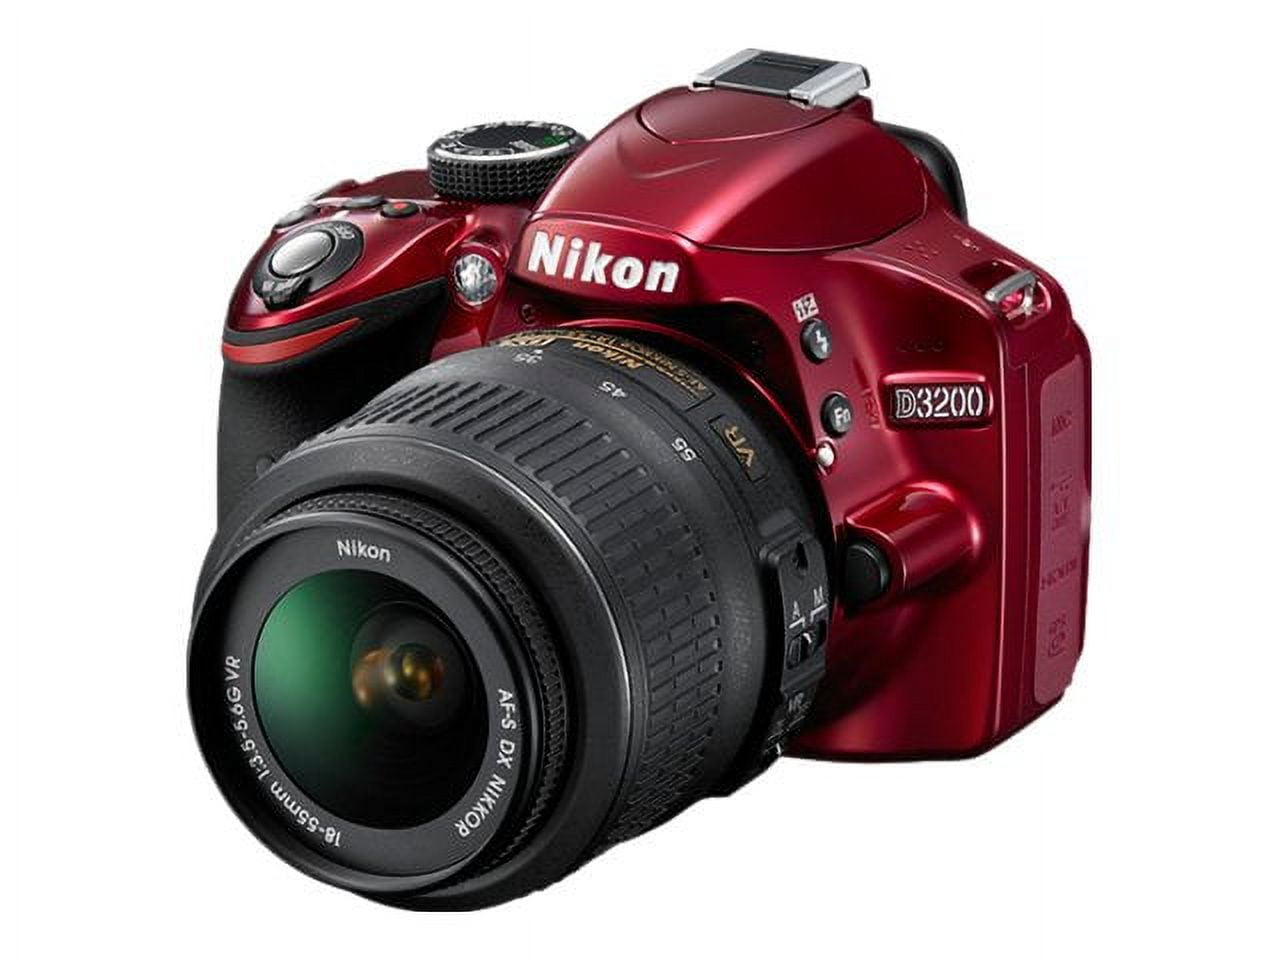 Nikon D3200 - Digital camera - SLR - 24.2 MP - APS-C - 1080p - 3x optical  zoom AF-S VR DX 18-55mm lens - red 